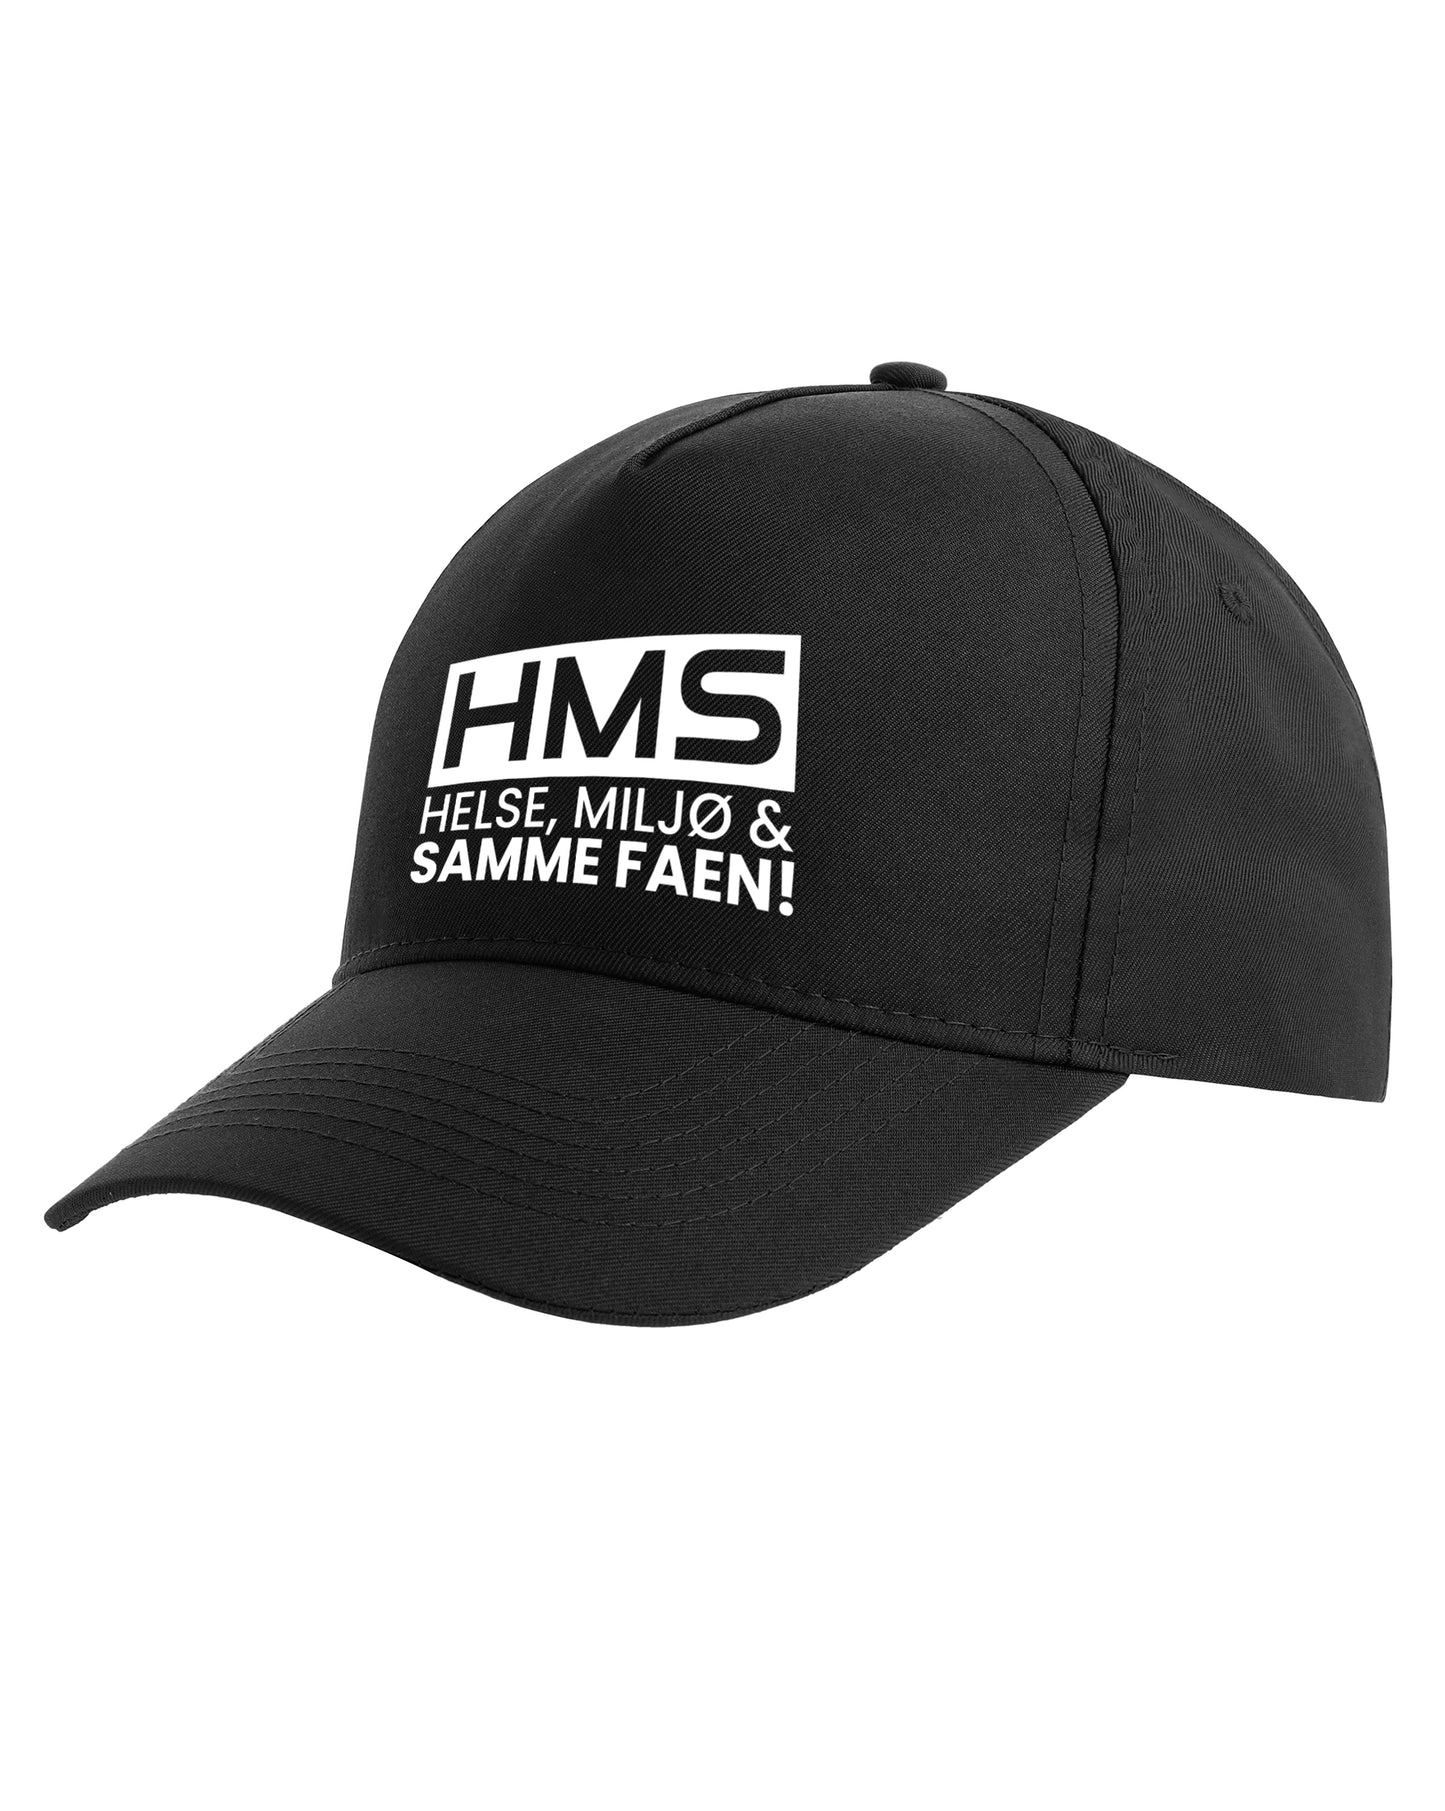 HMS - Caps